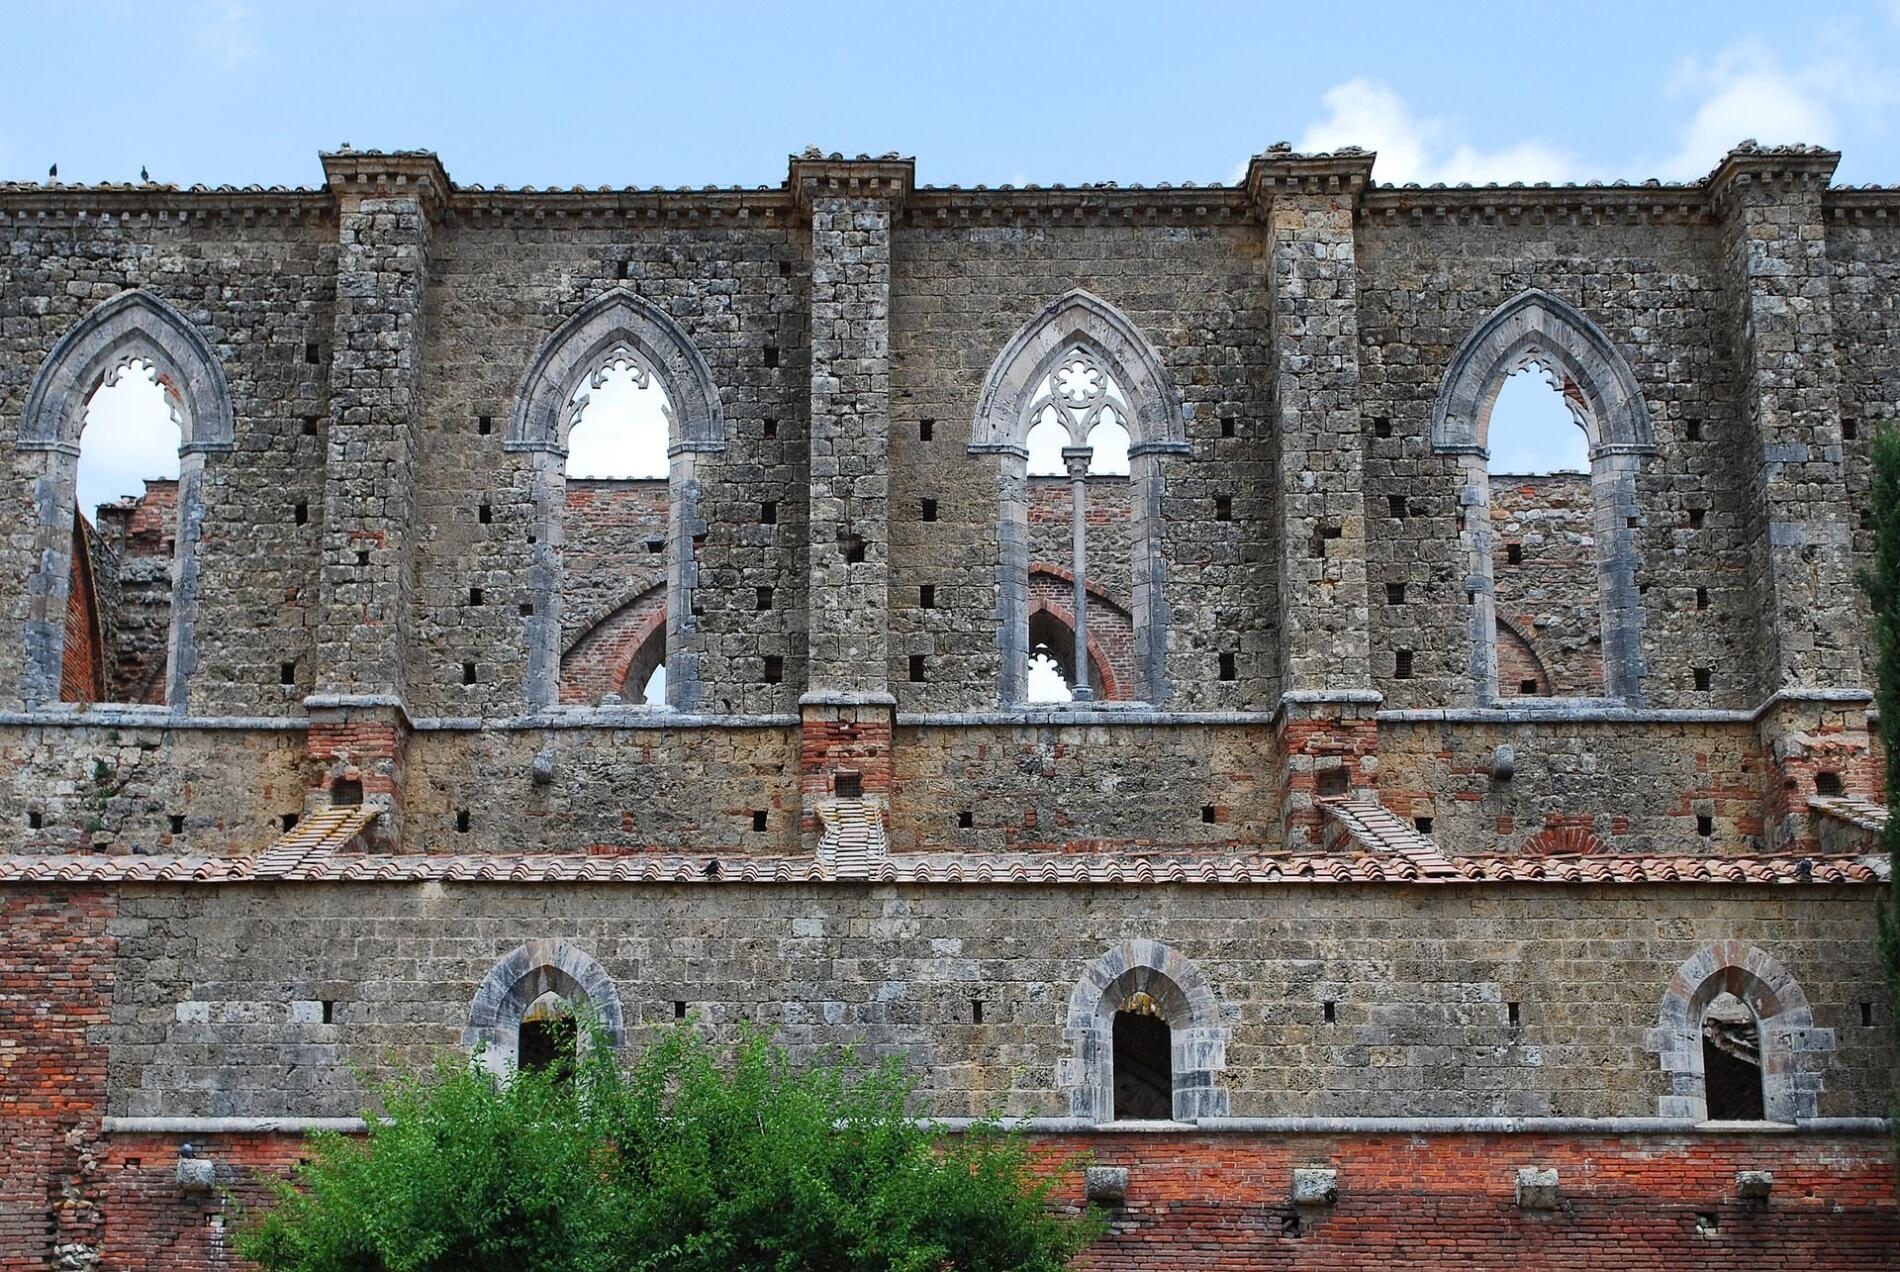 La Abadía de San Galgano, Florencia, I